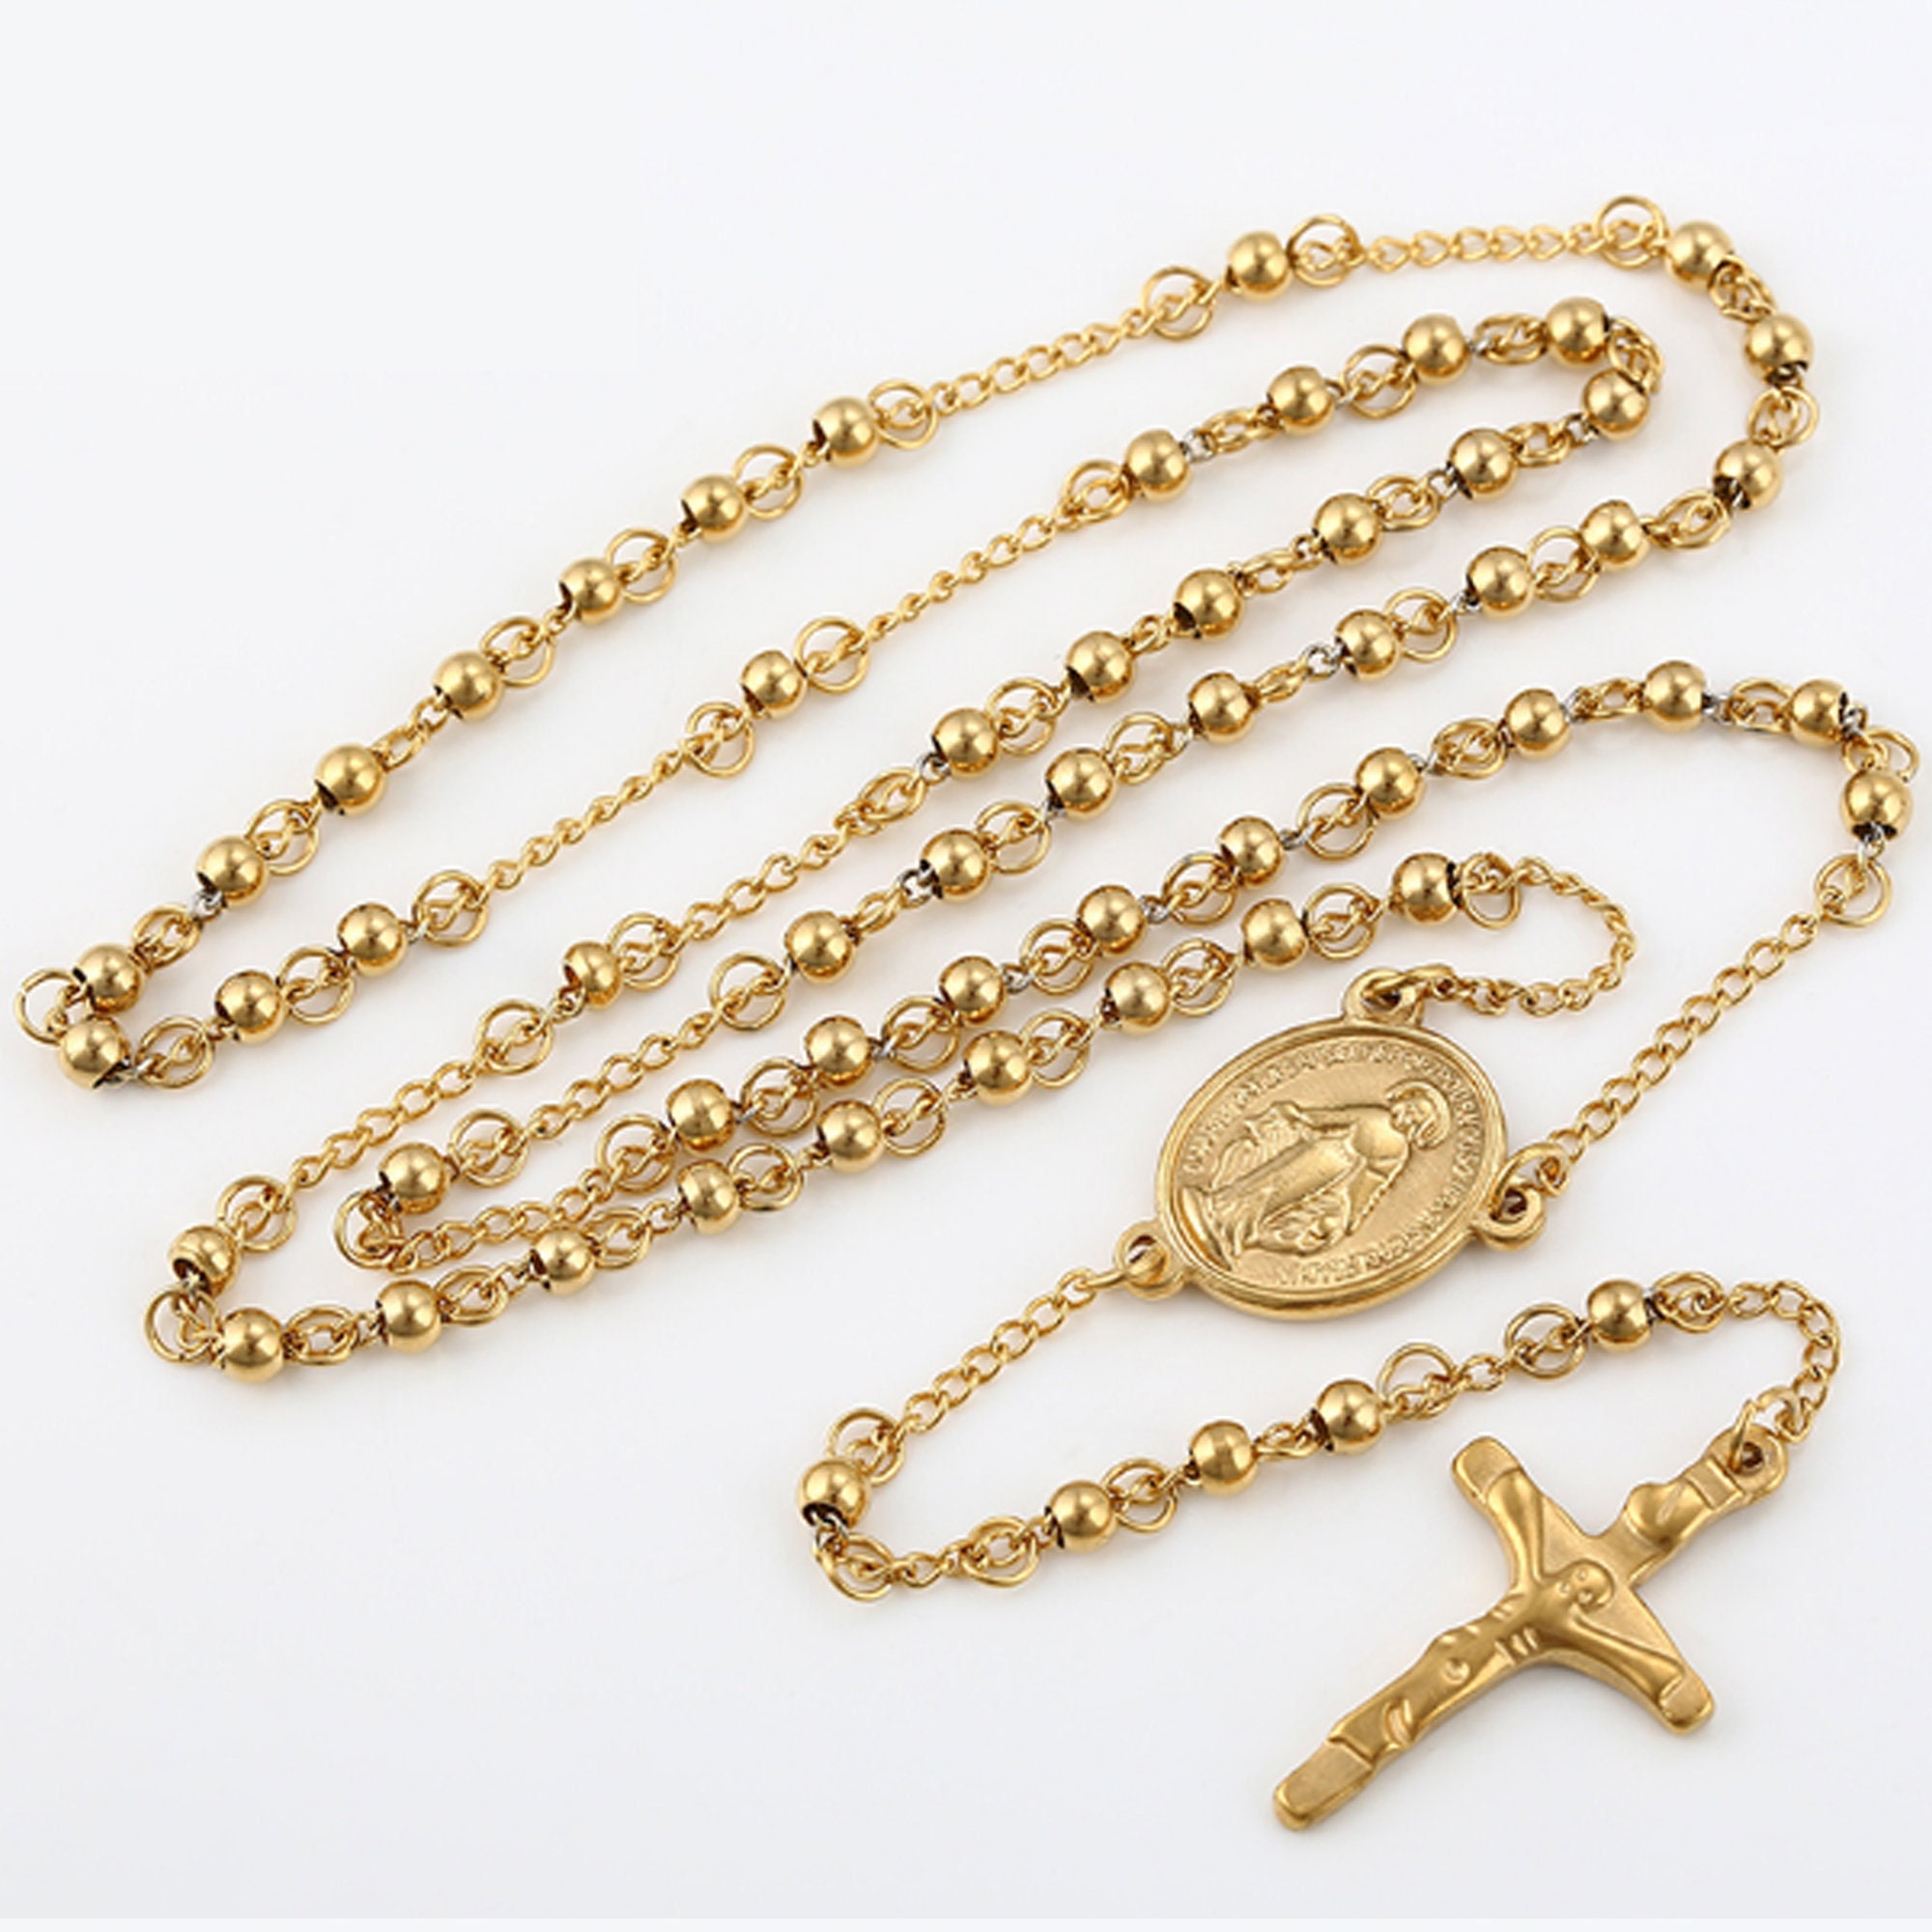 Colgante de Medalla Milagrosa Gpunk, collar de la Virgen María, color  dorado, joyería para mujer, Cruz, collar religioso cristiano católico -  AliExpress